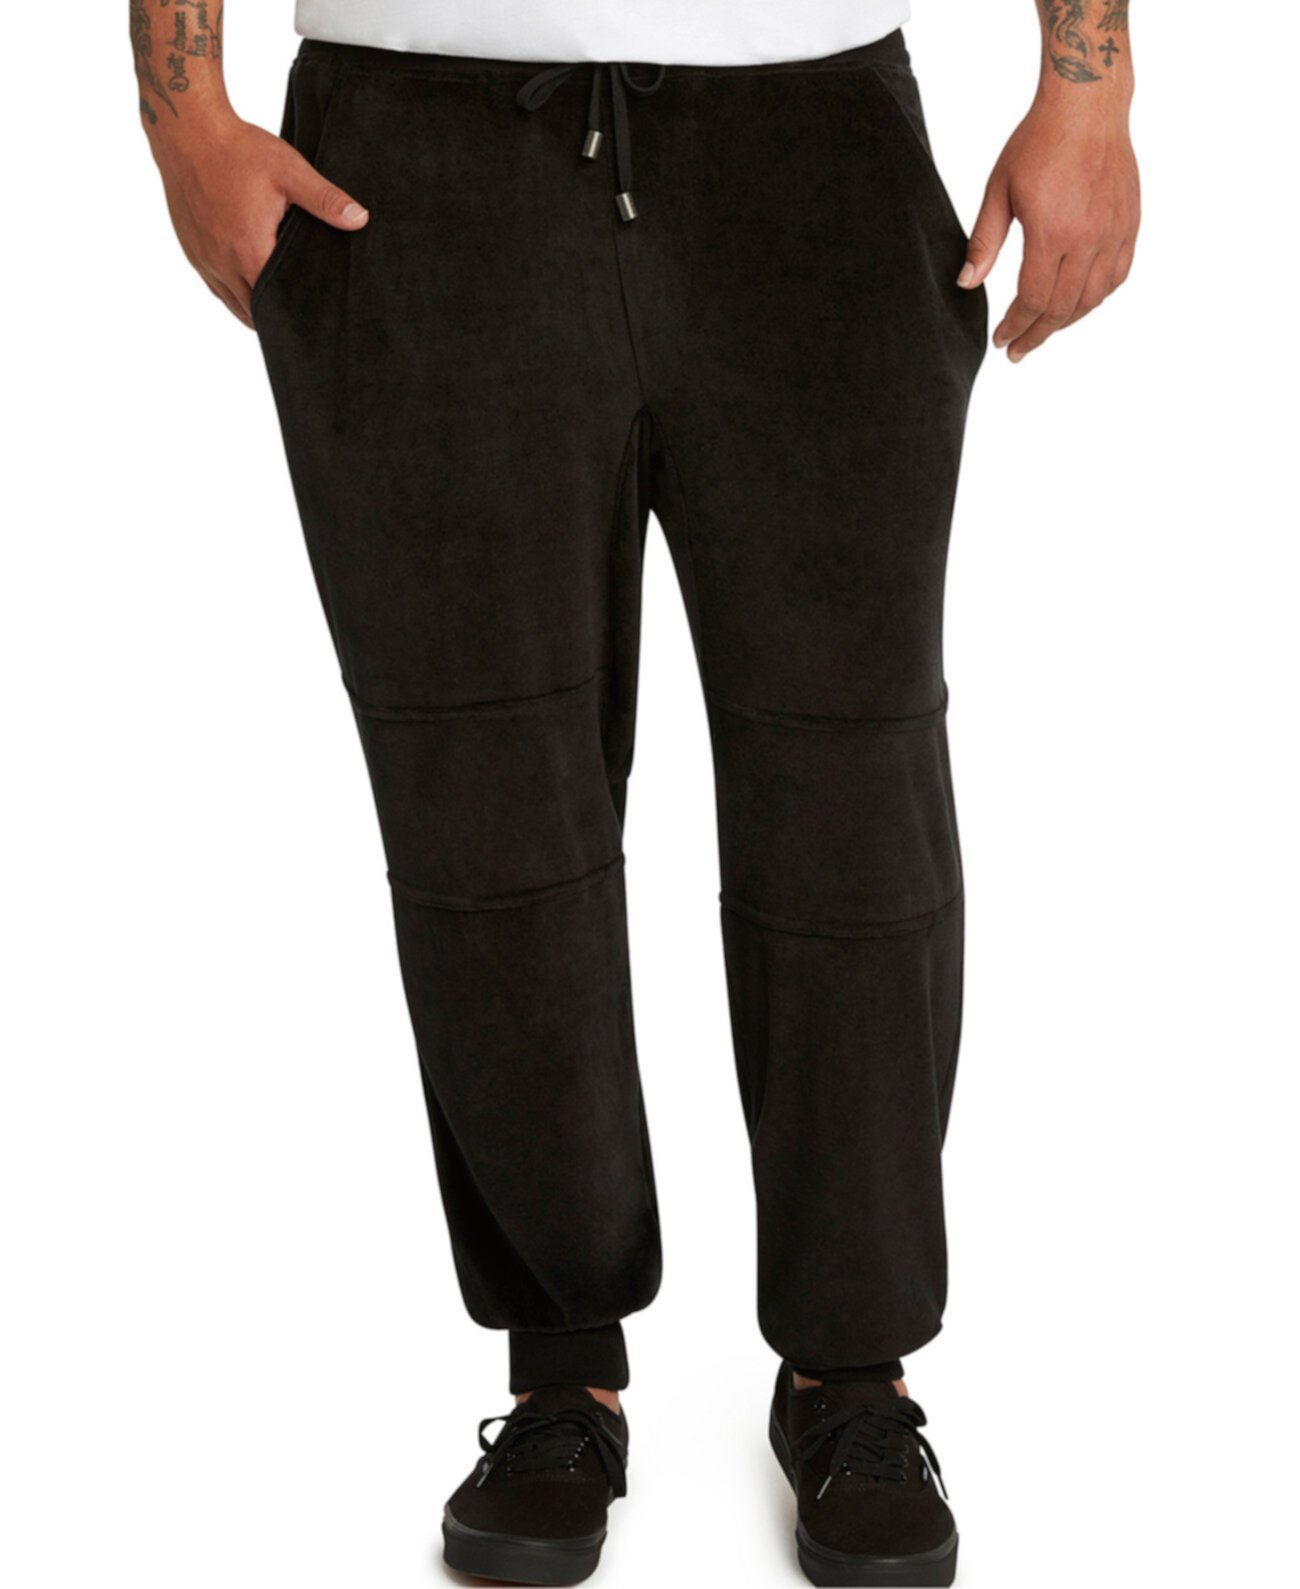 Коллекции MVP Мужские большие и высокие велюровые брюки Jogger Mvp Collections By Mo Vaughn Productions